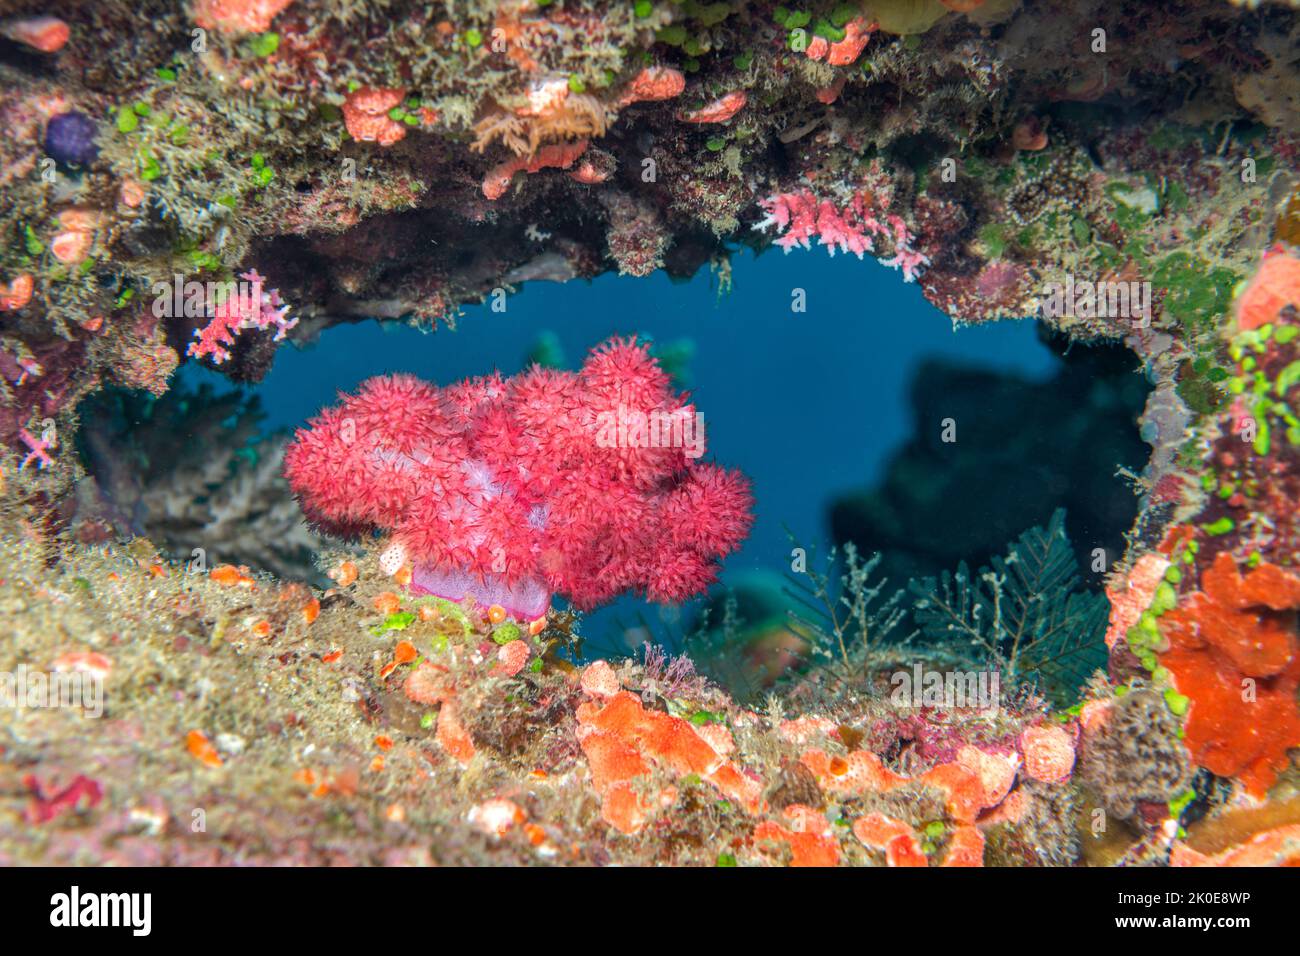 Die Nahaufnahme der rosa tropischen, weichen Korallen an einem lebendigen Riff zeigt die komplizierten und zarten Details, die sich auf der Koralle zu einem wunderschönen Leben el besiedeln Stockfoto